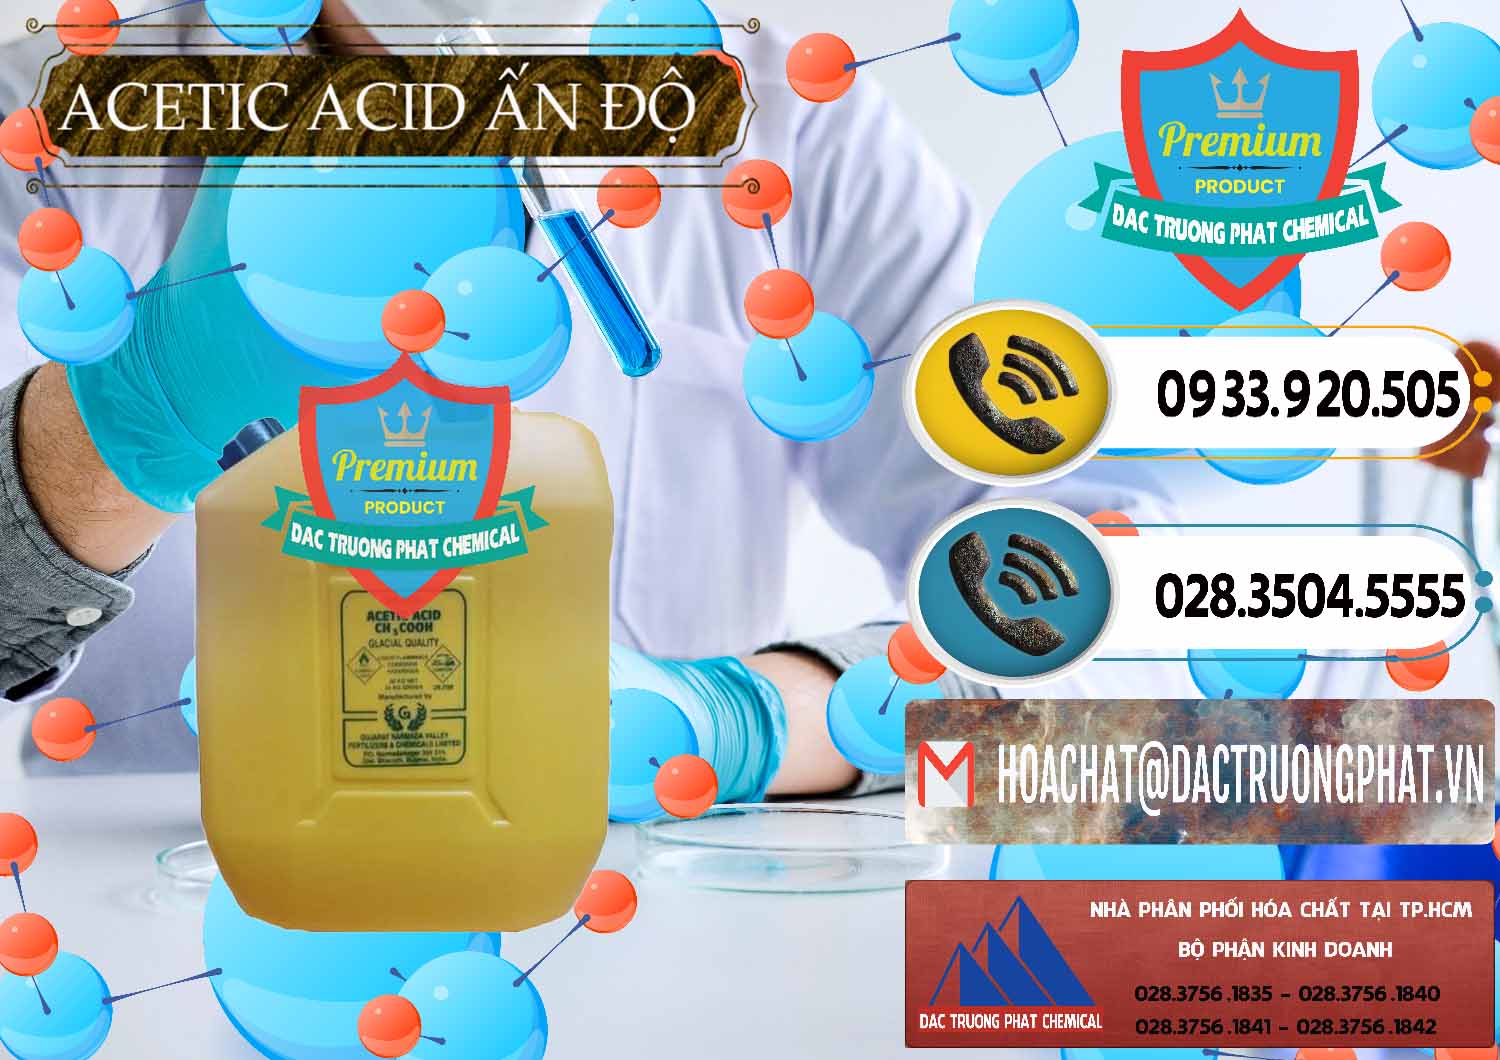 Cty bán - cung ứng Acetic Acid – Axit Acetic Ấn Độ India - 0359 - Nhà cung cấp ( nhập khẩu ) hóa chất tại TP.HCM - hoachatdetnhuom.vn